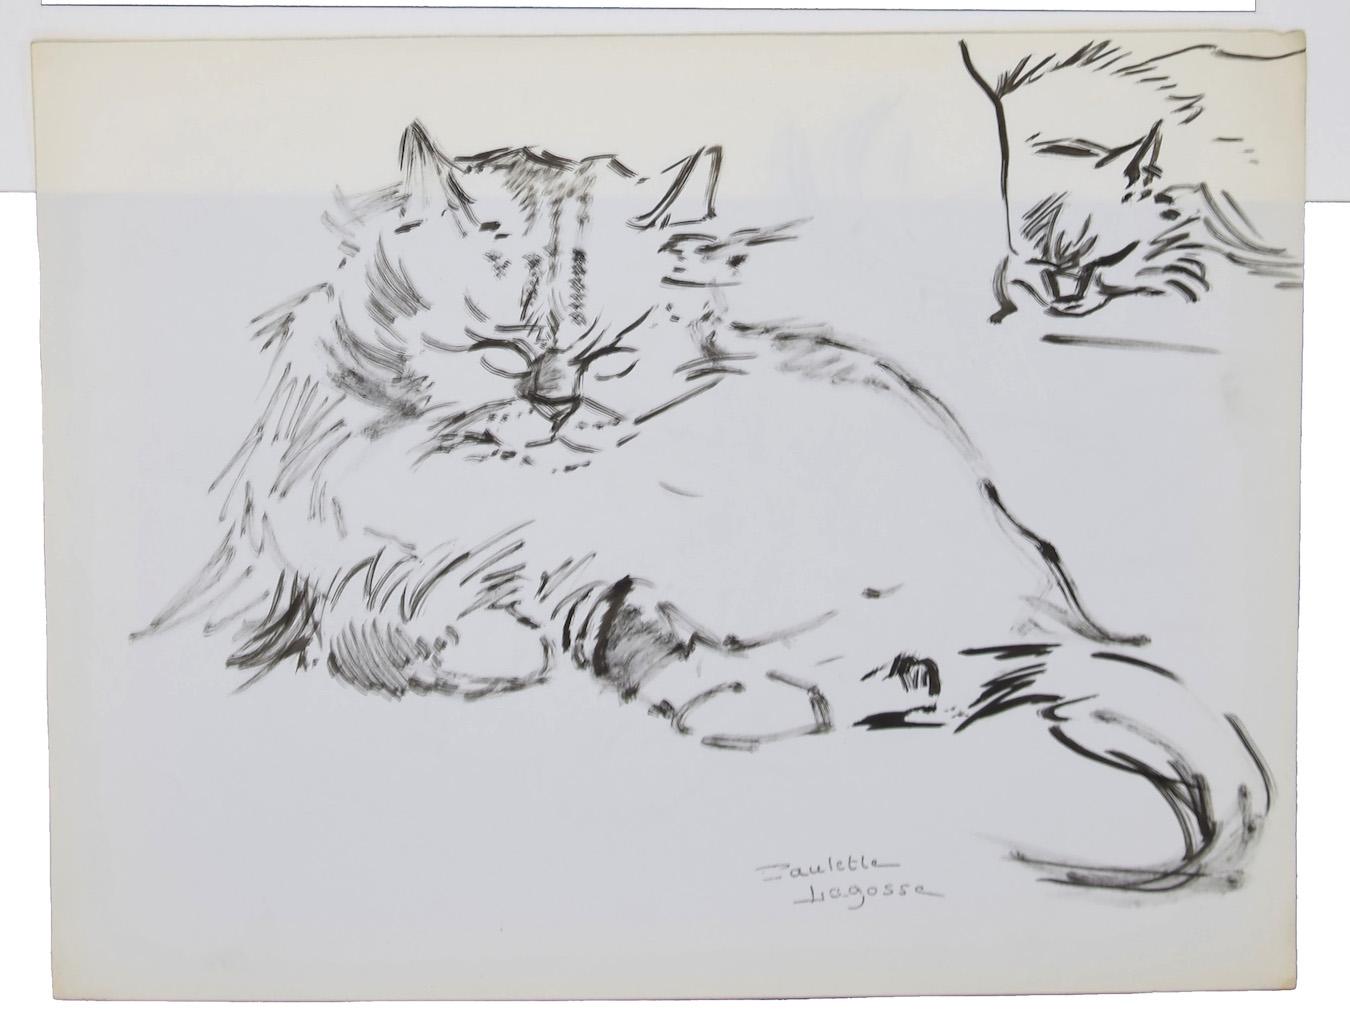 Le Chats est un dessin au stylo sur papier couleur ivoire, réalisé par Marie Paulette Lagosse (1921-1996).

Signé à la main en bas à droite au stylo. Avec un dessin d'un autre chat endormi au dos.

L'état de conservation des œuvres d'art est